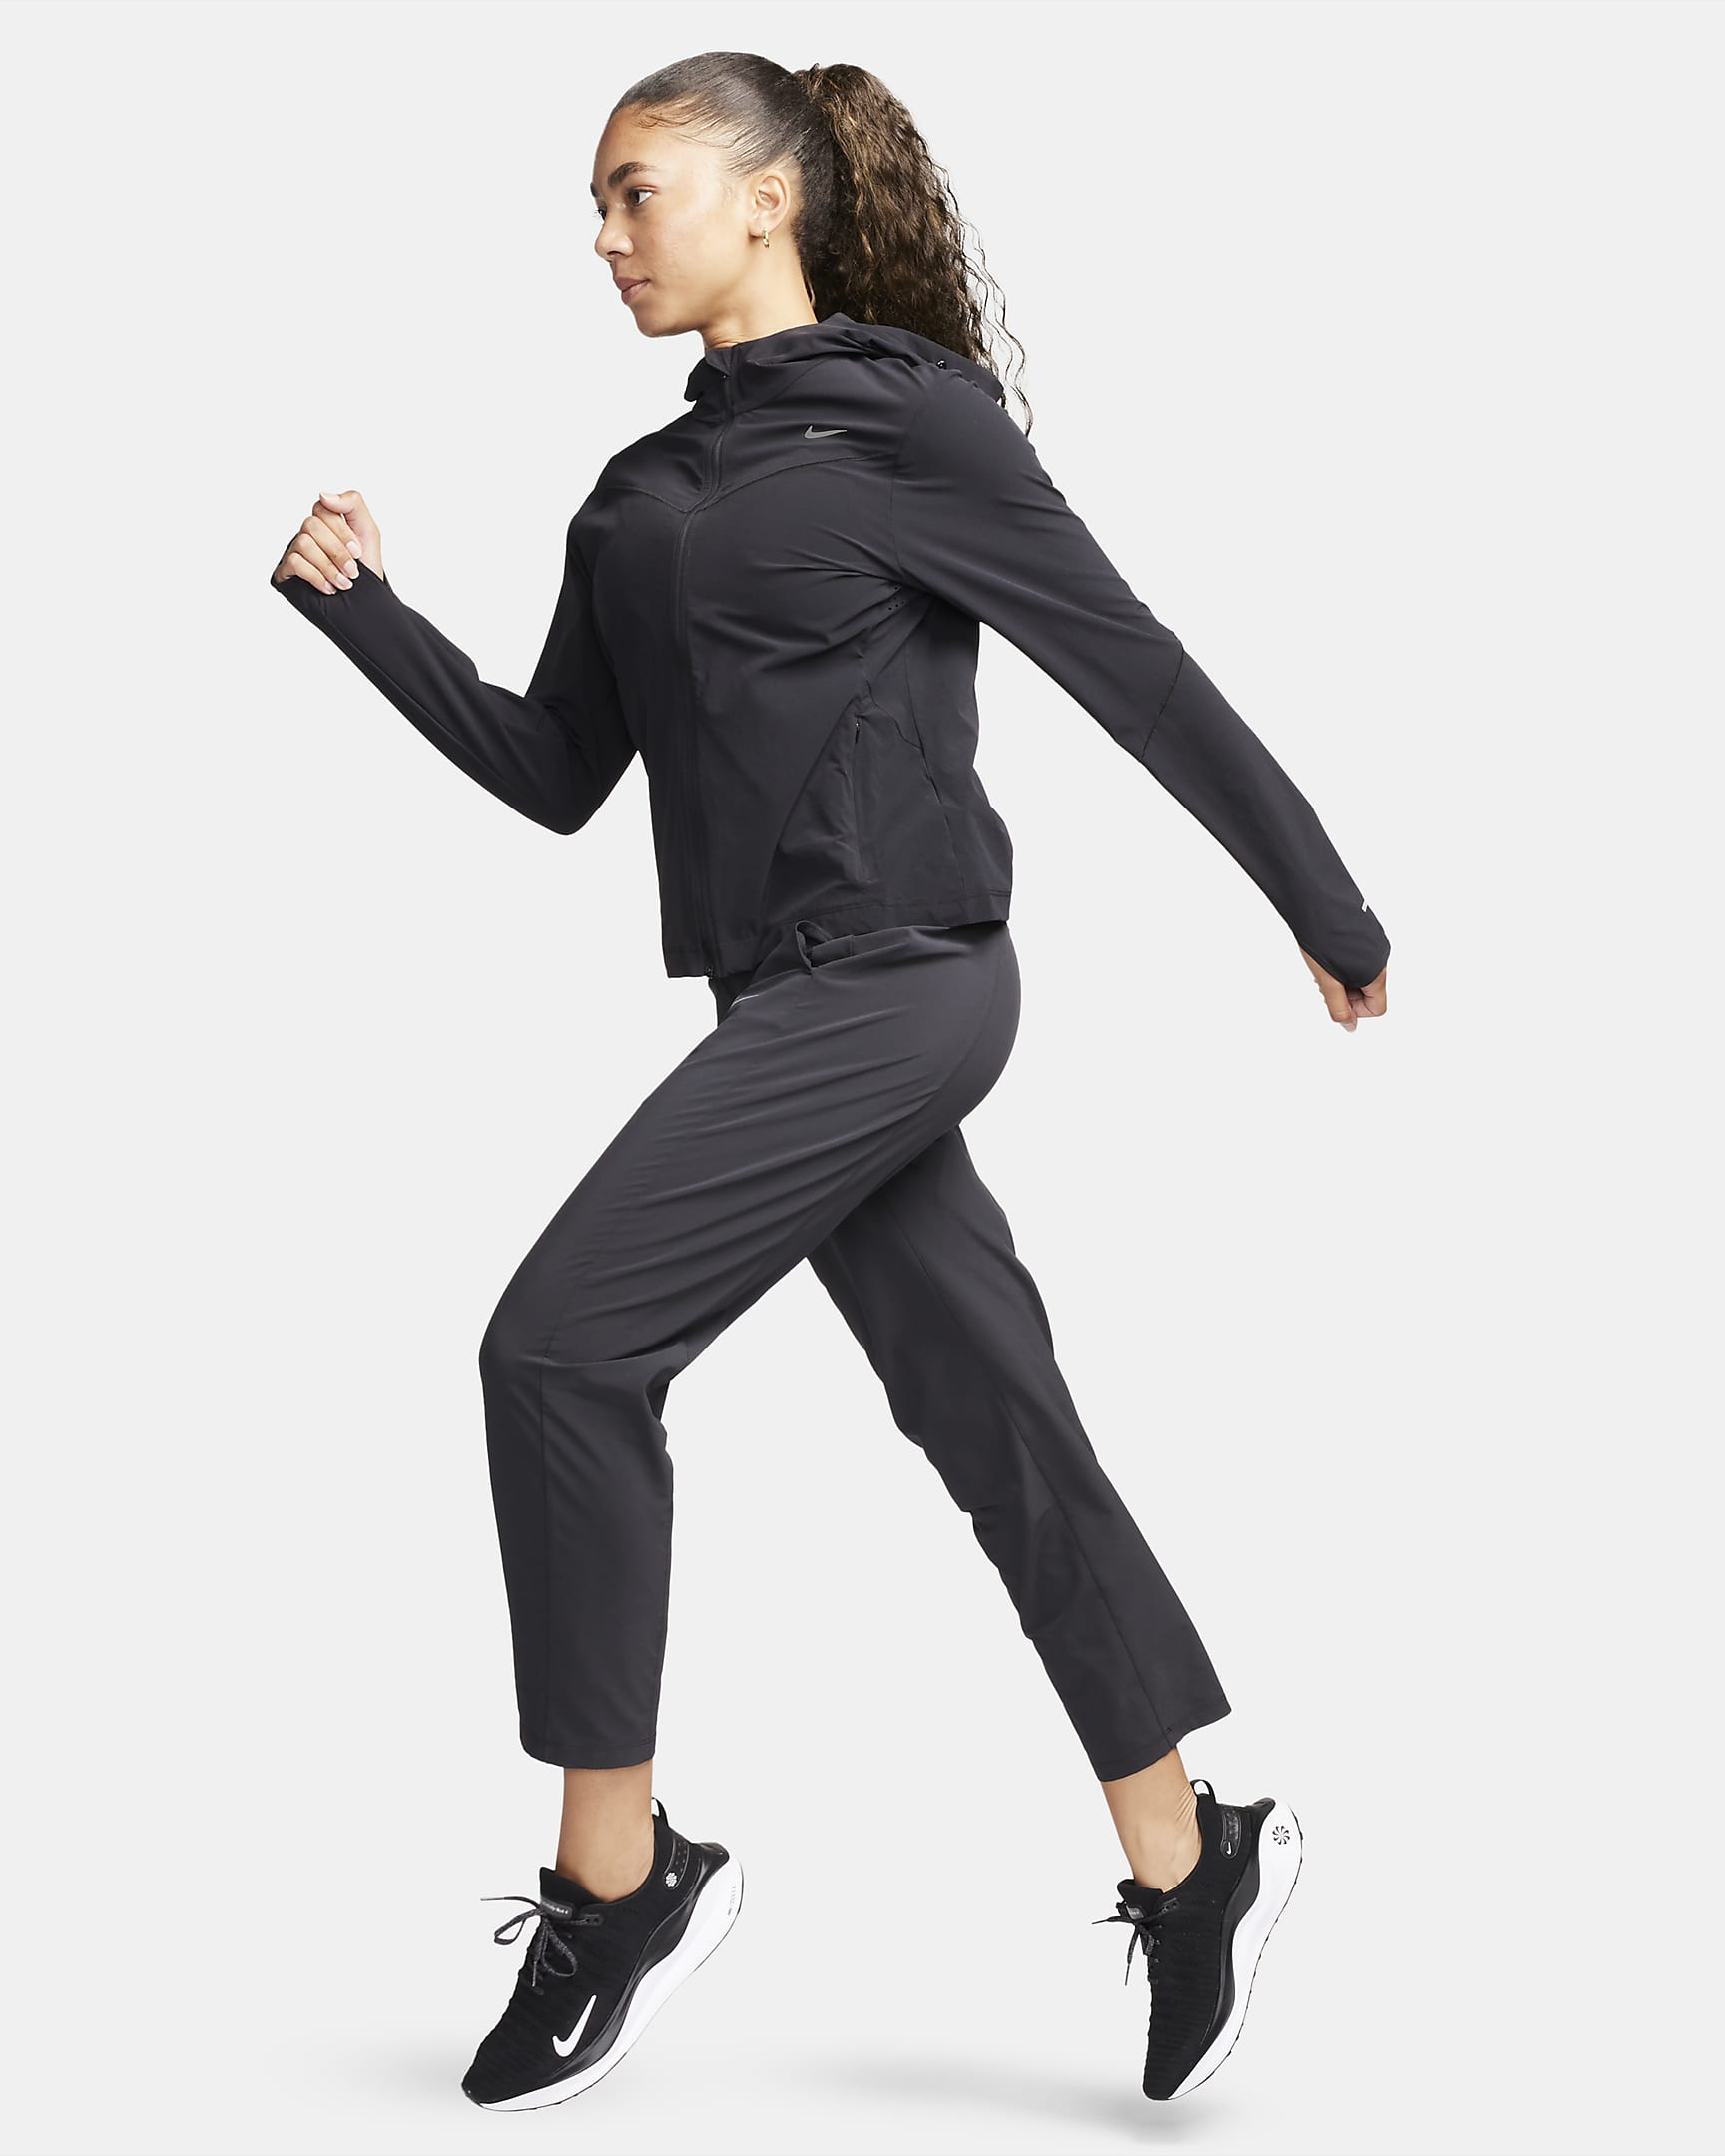 Veste de running Nike Swift UV pour femme - Noir